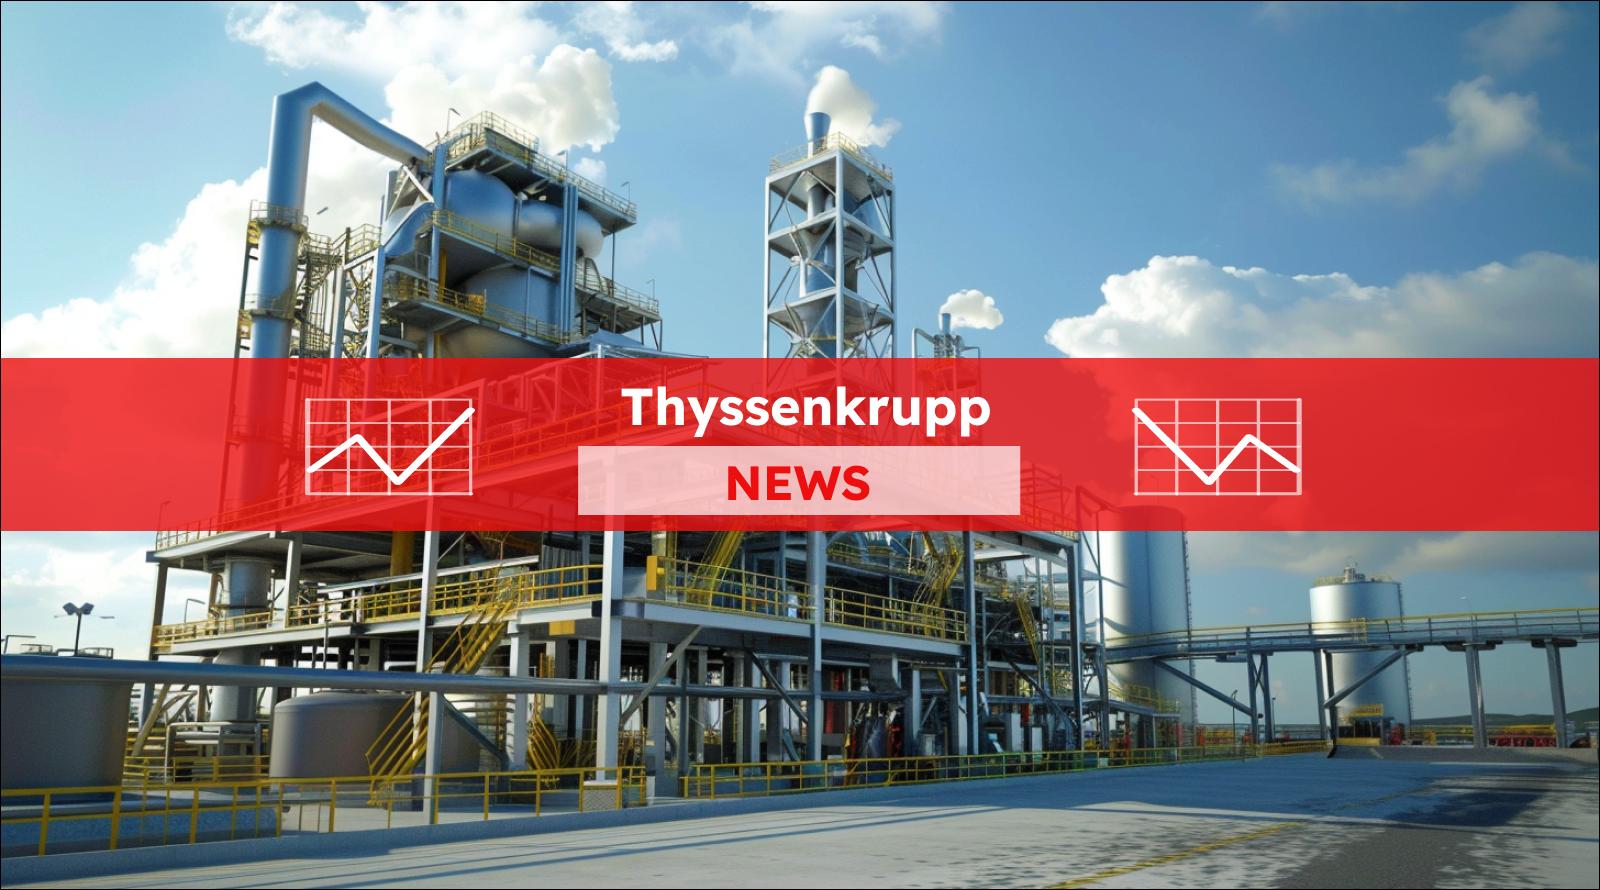 eine moderne Industrieanlage mit Tanks und Strukturen unter blauem Himmel, mit einem Thyssenkrupp NEWS Banner.